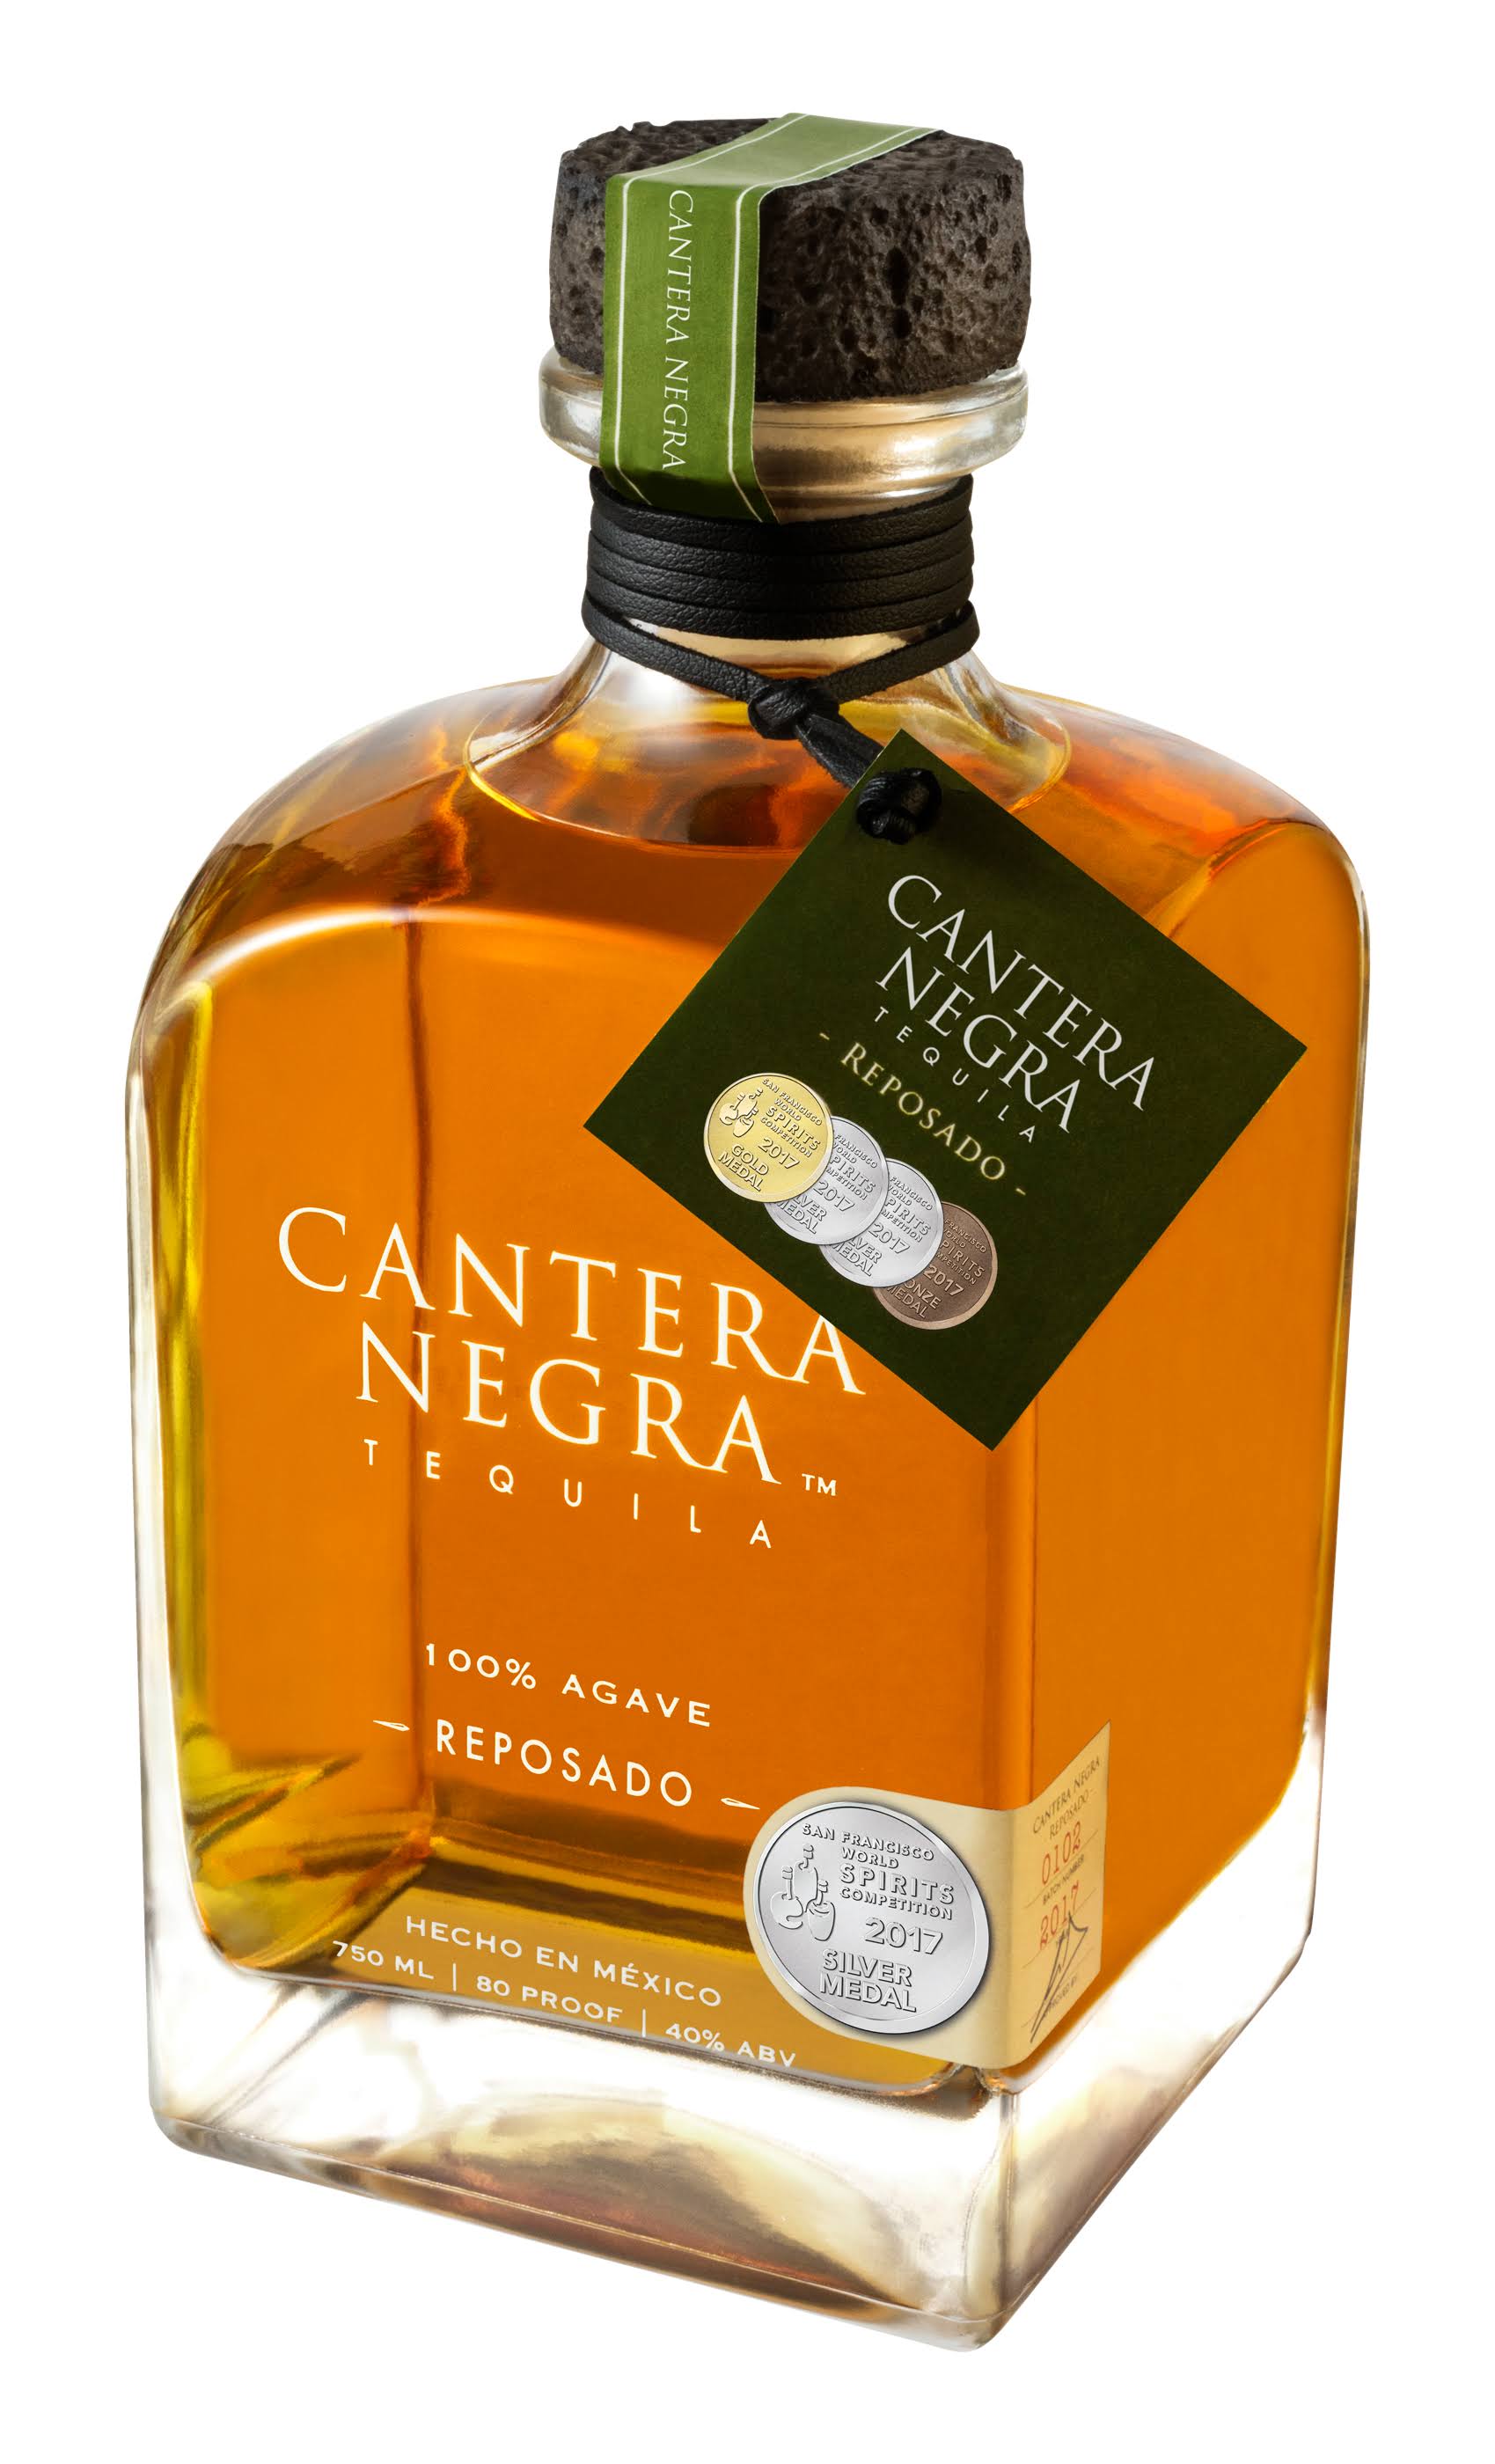 Cantera Negra Tequila, Reposado, 100% Agave - 750 ml